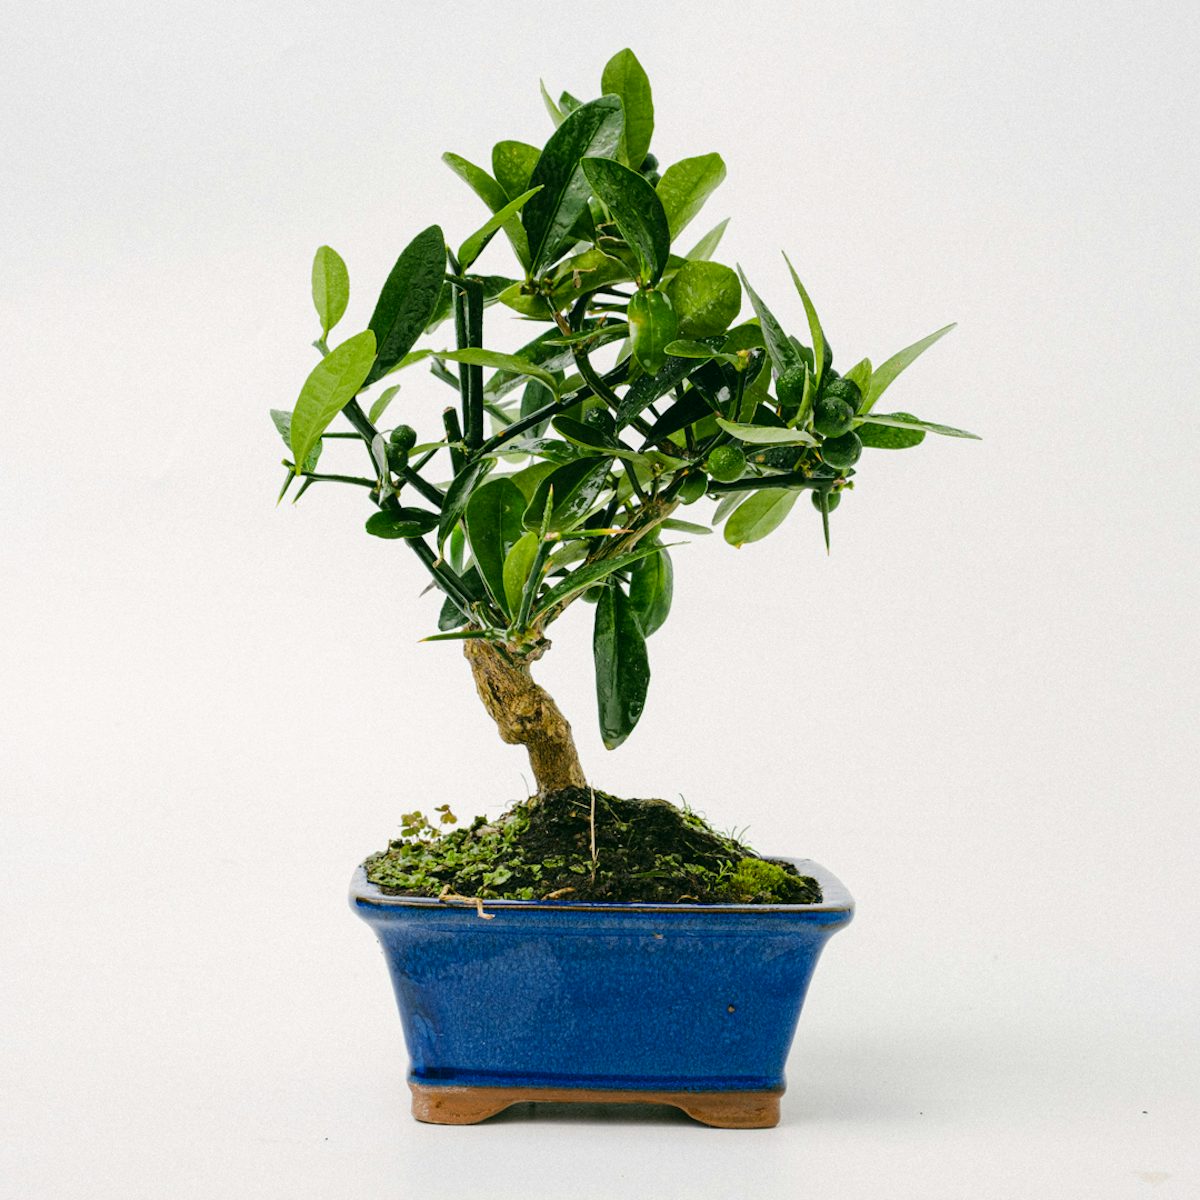 Bonsaibaum 10 Jahre Citrus kinzu / Orangenbaum